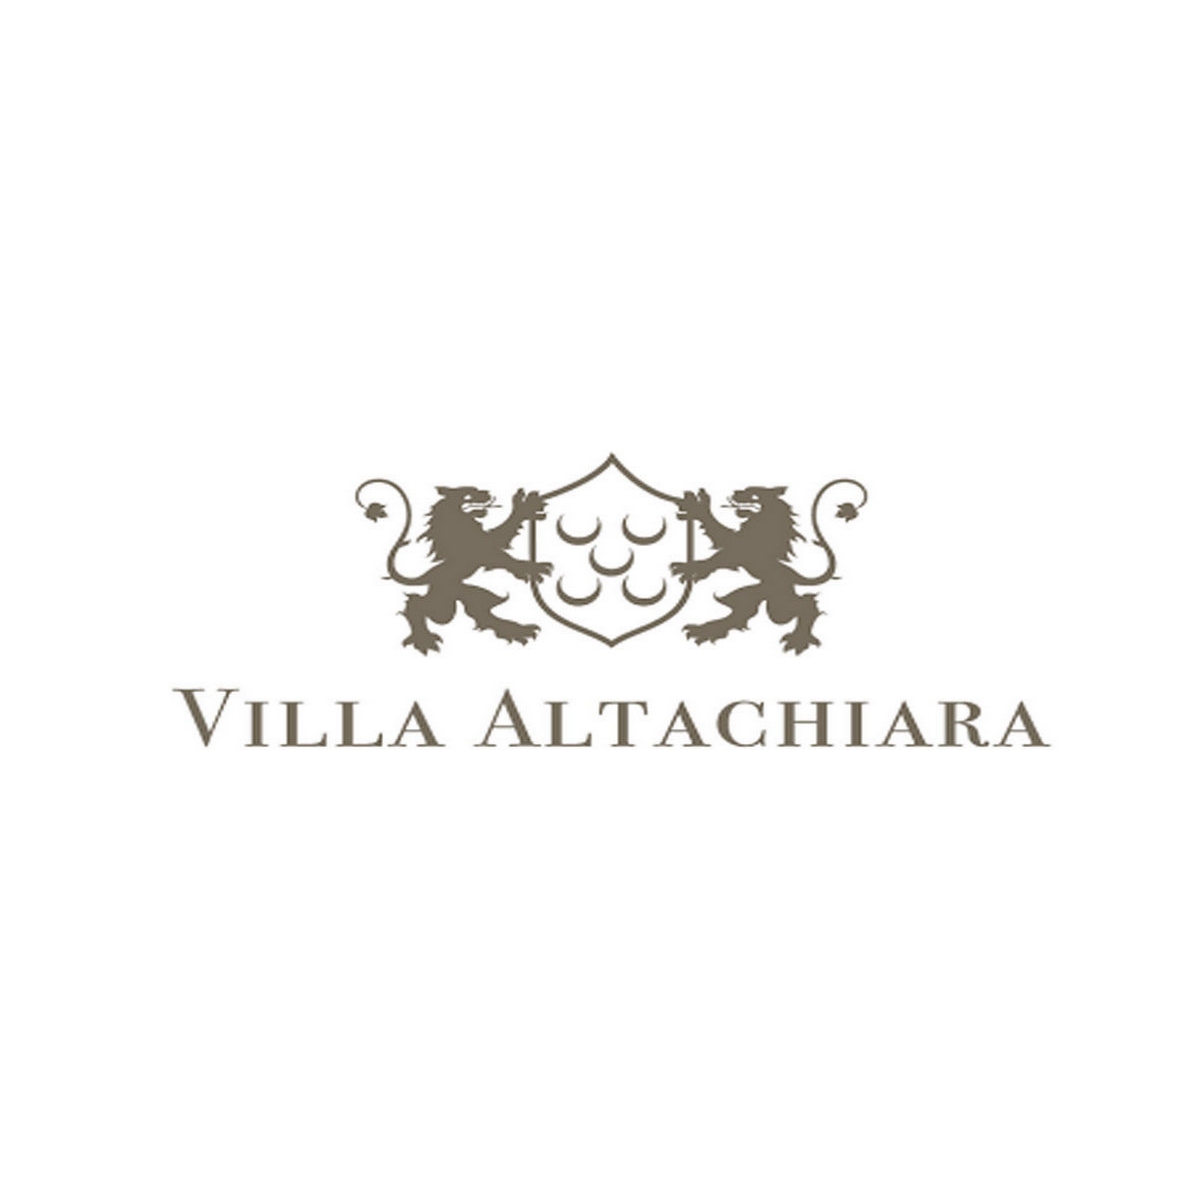 Villa altachiara